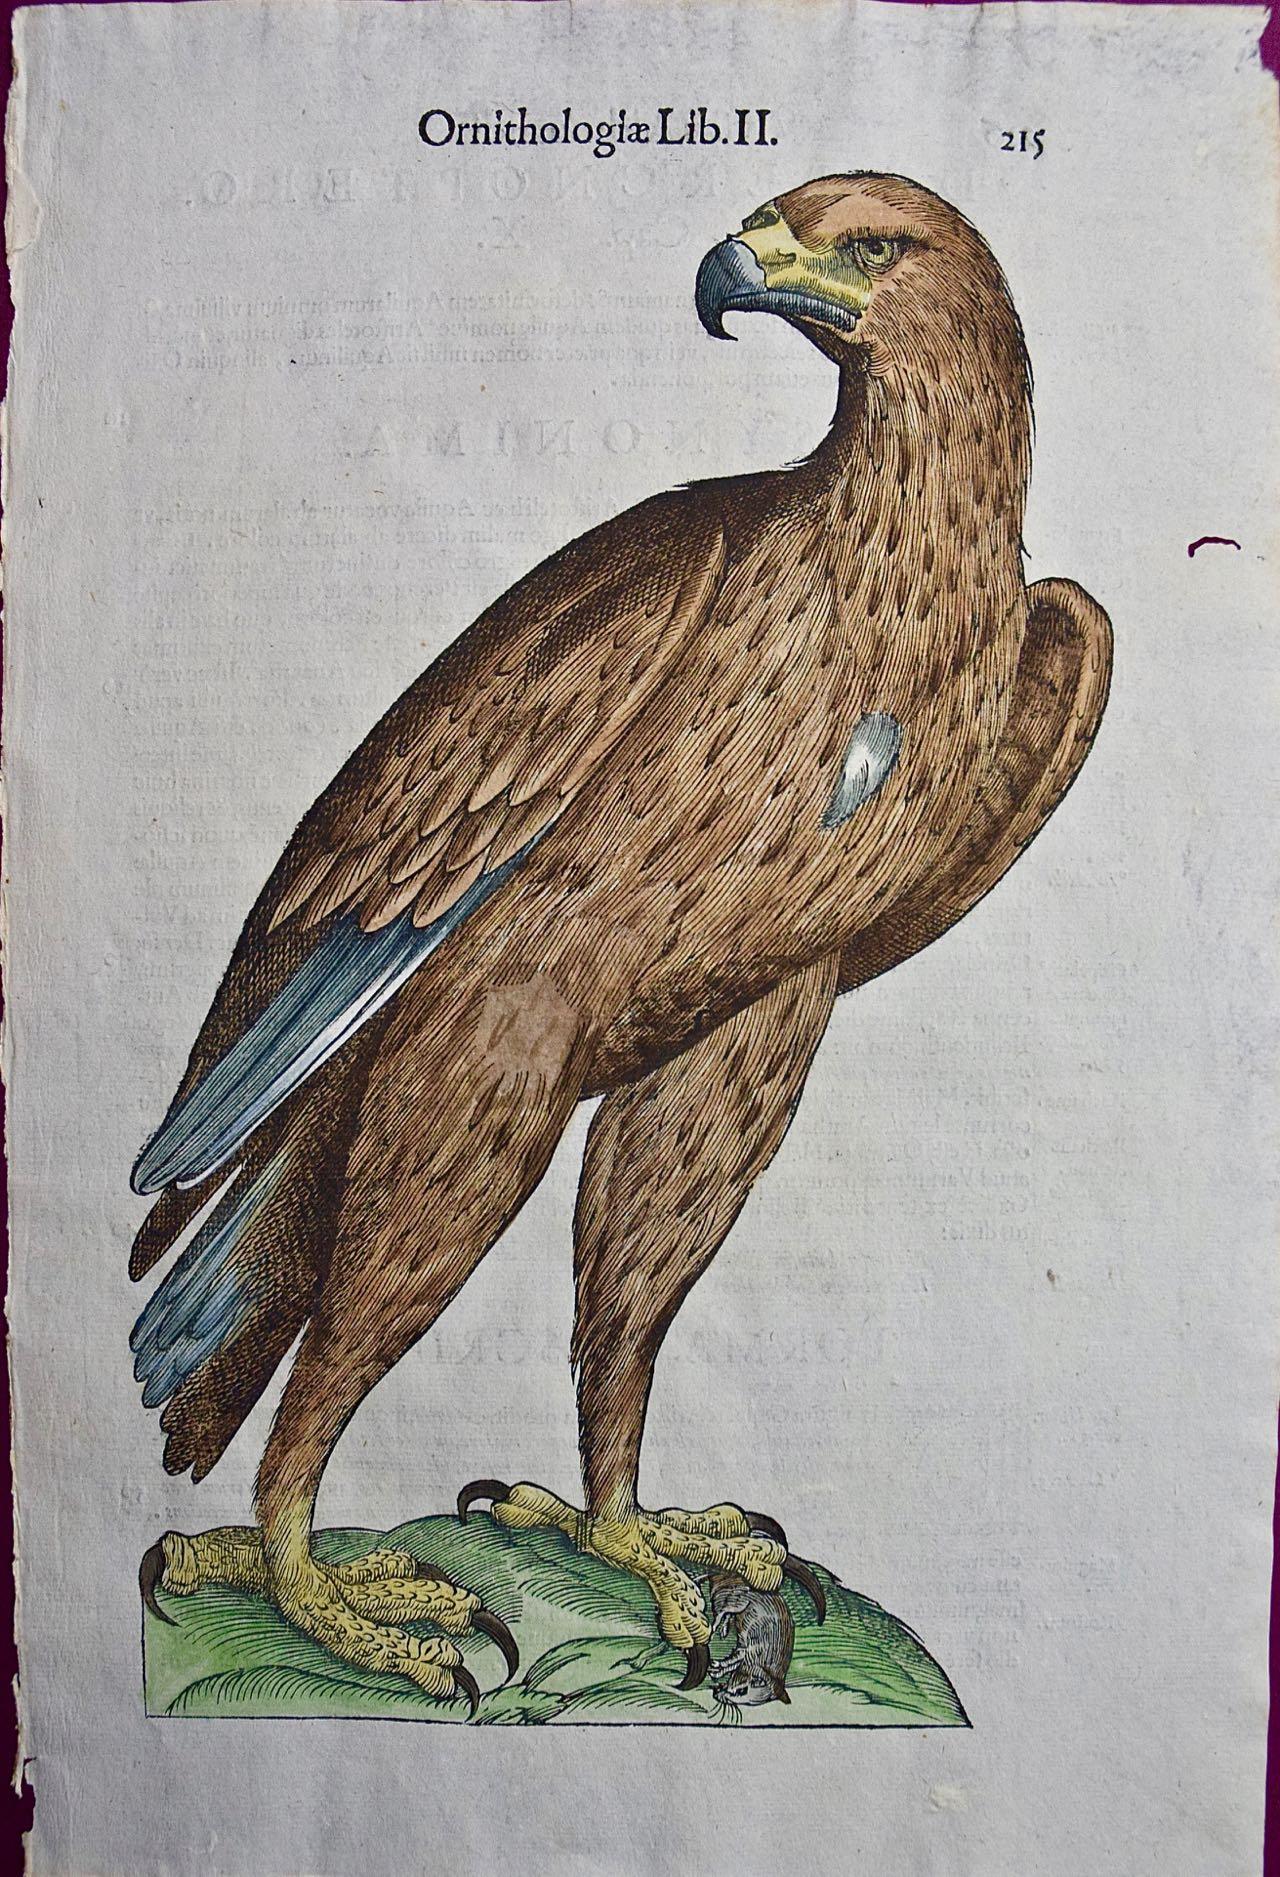 Adler: Eine handkolorierte Gravur von Aldrovandi aus dem 16./17. Jahrhundert